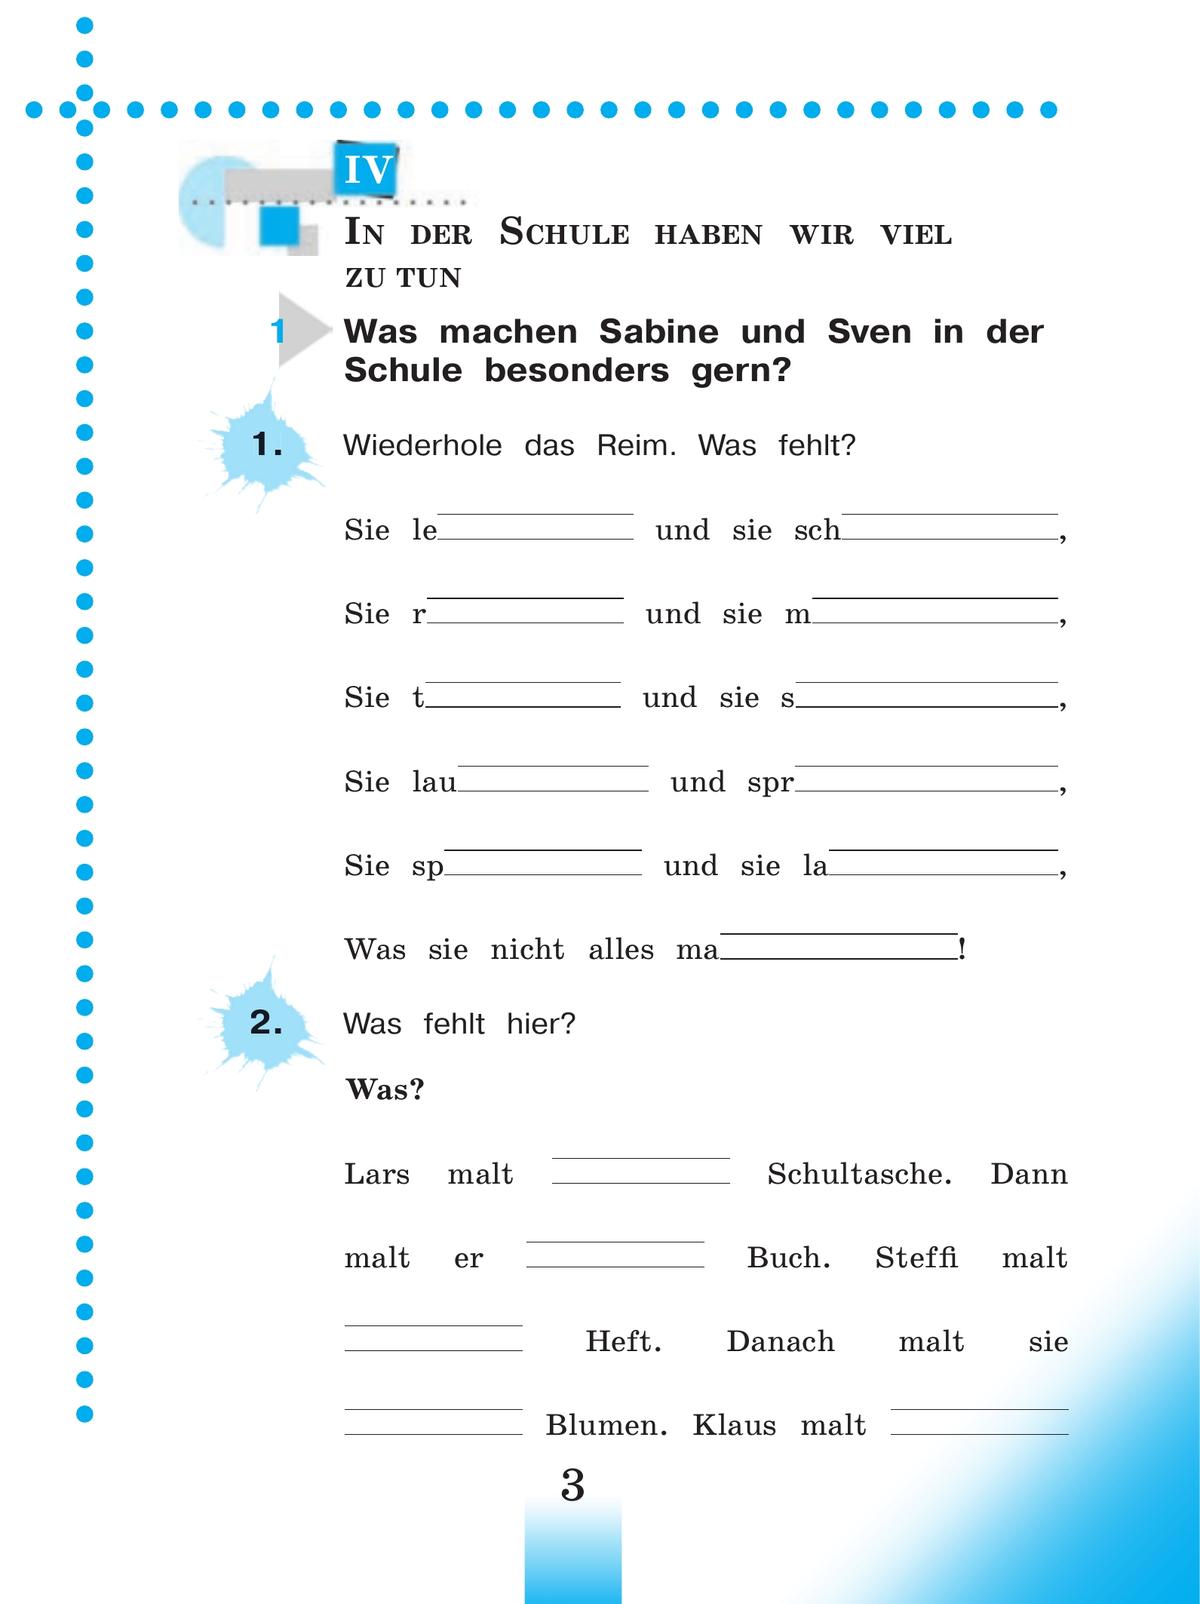 Немецкий язык. Рабочая тетрадь. 3 класс. В 2-х ч. Ч. Б 5